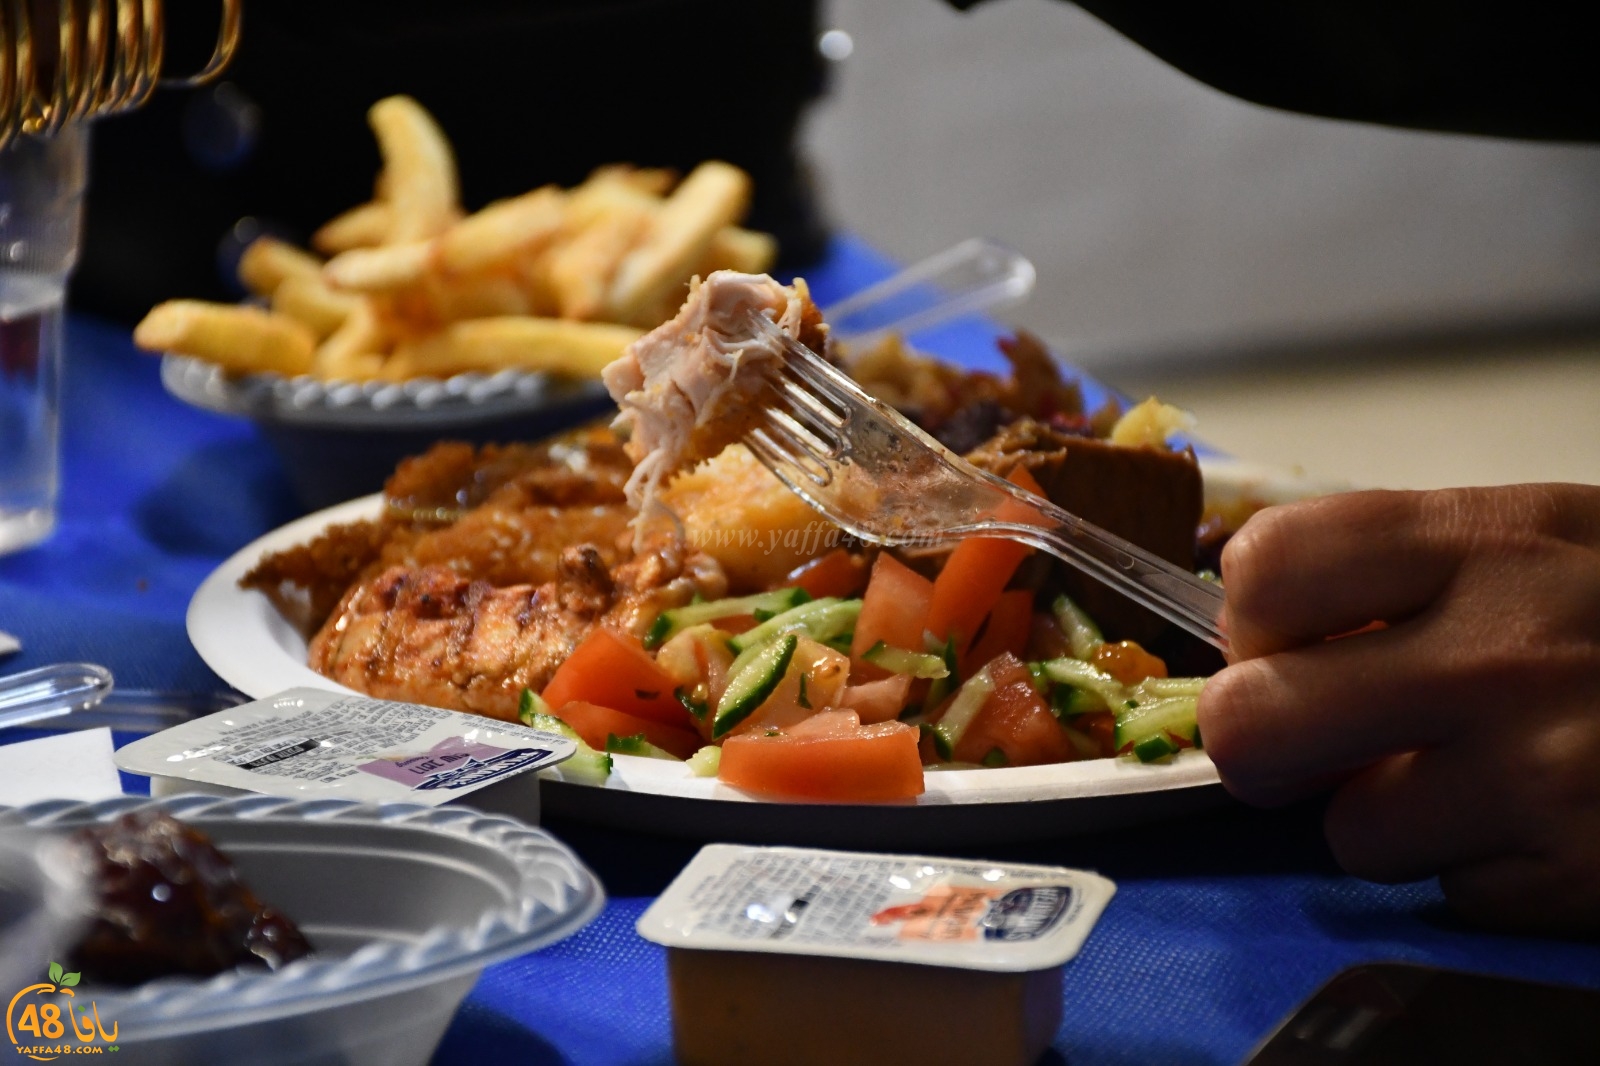  بالصور: الكلية الأكاديمية يافا تل ابيب تُنظم افطاراً جماعياً لطلابها 